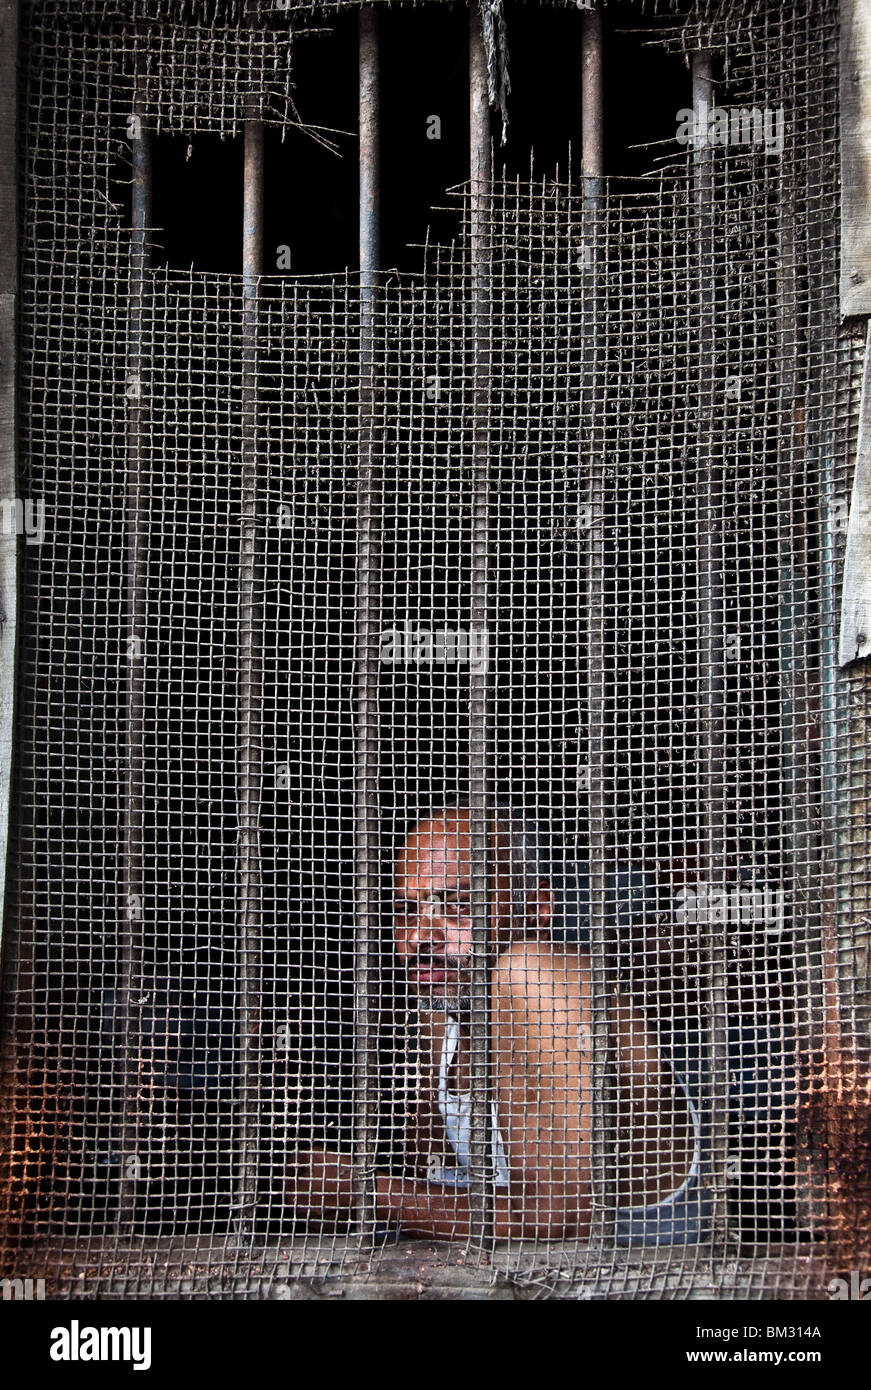 Un homme regarde à la rue à Kolkata, Inde. Accueil à des millions grouillant le fantôme de l'ère coloniale stills se bloque. Banque D'Images